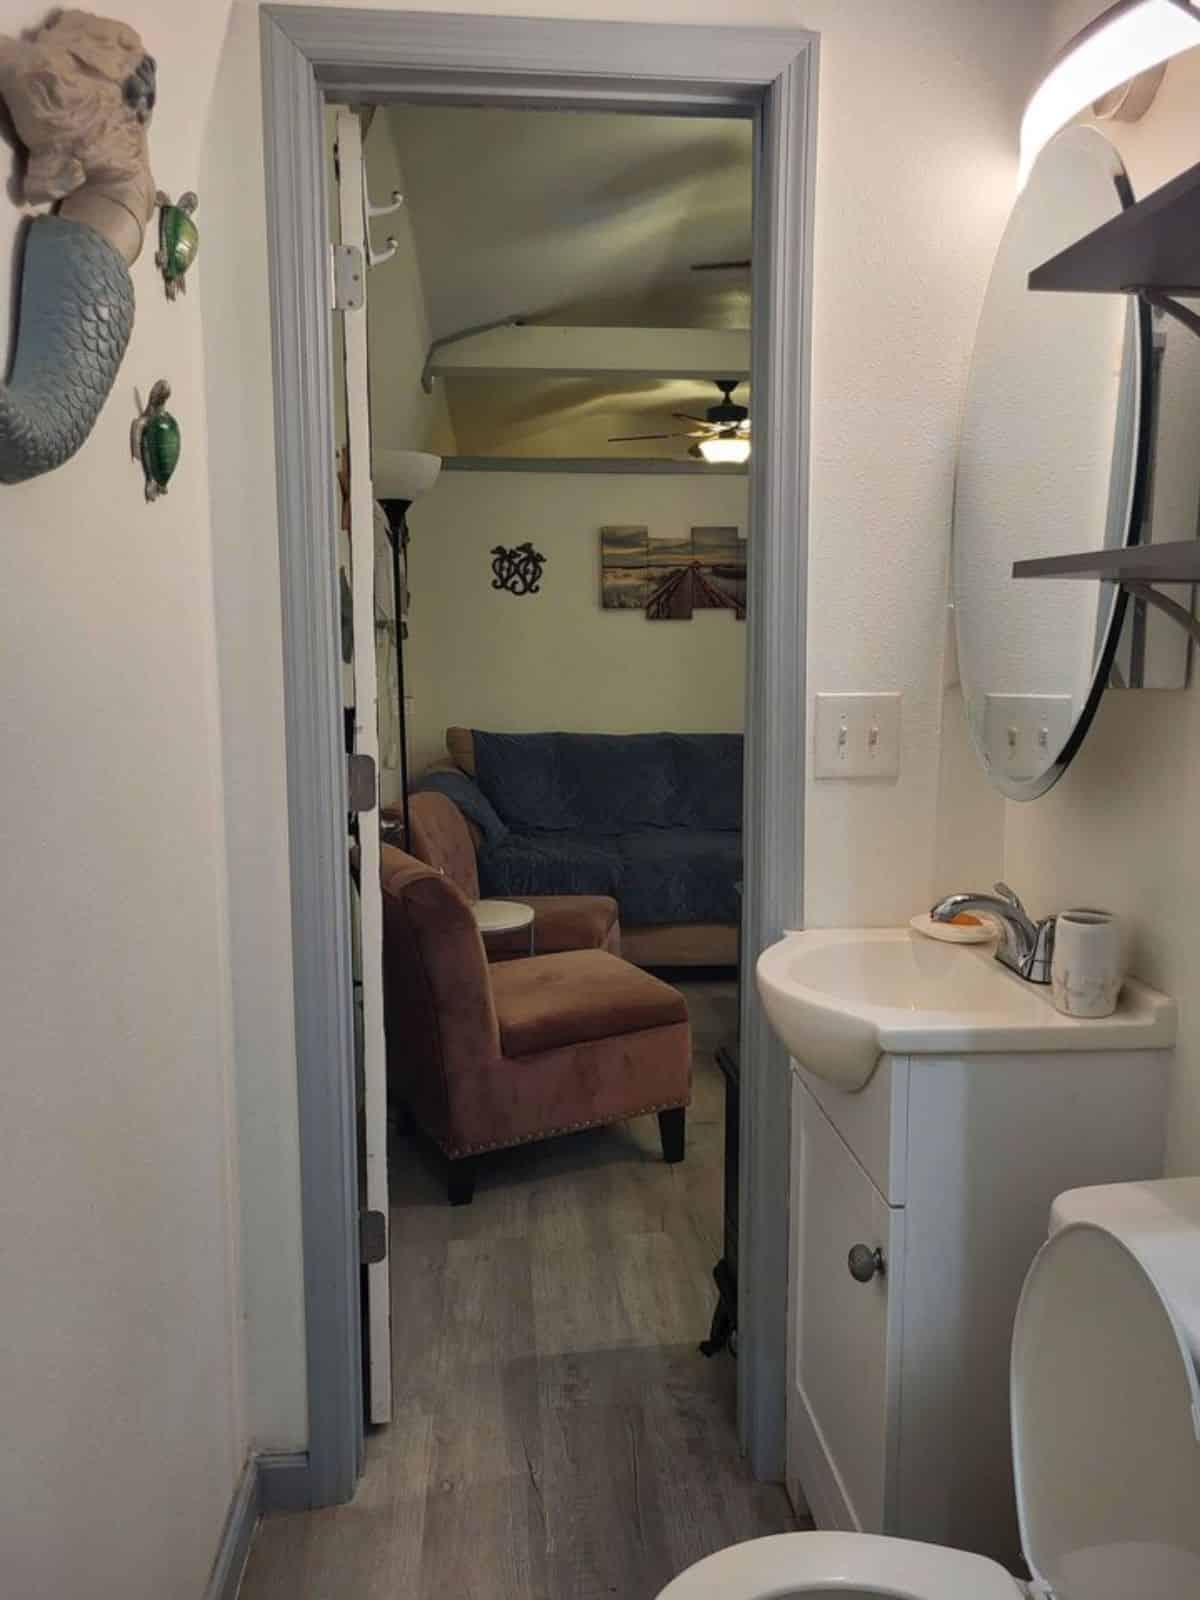 living area view from bathroom door